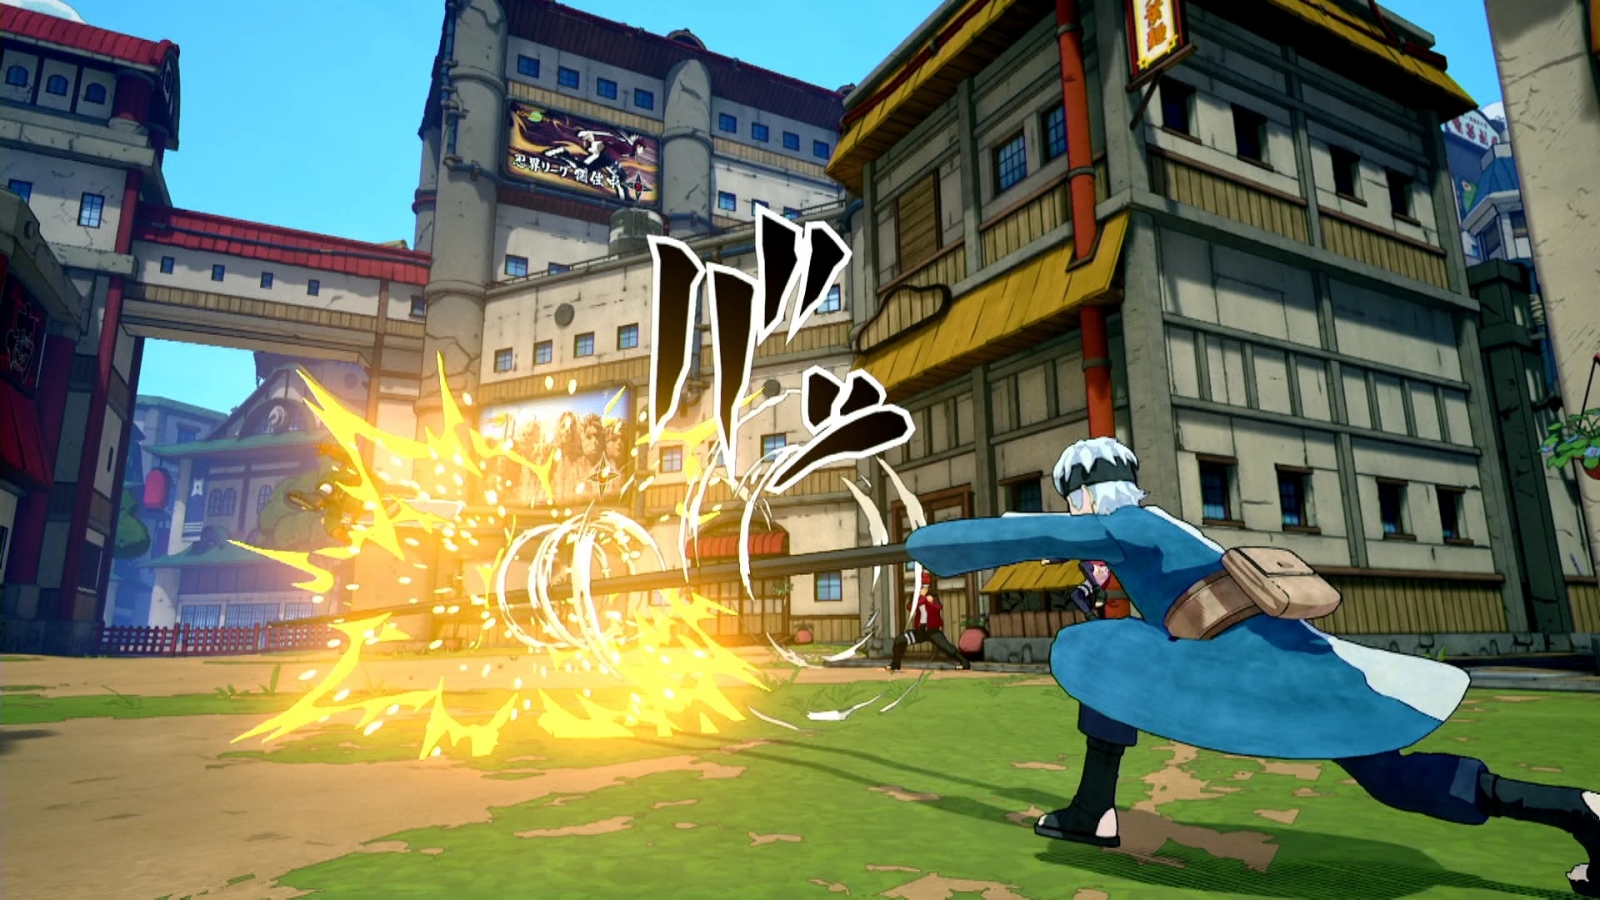 PS4 Naruto to Boruto: Shinobi Striker